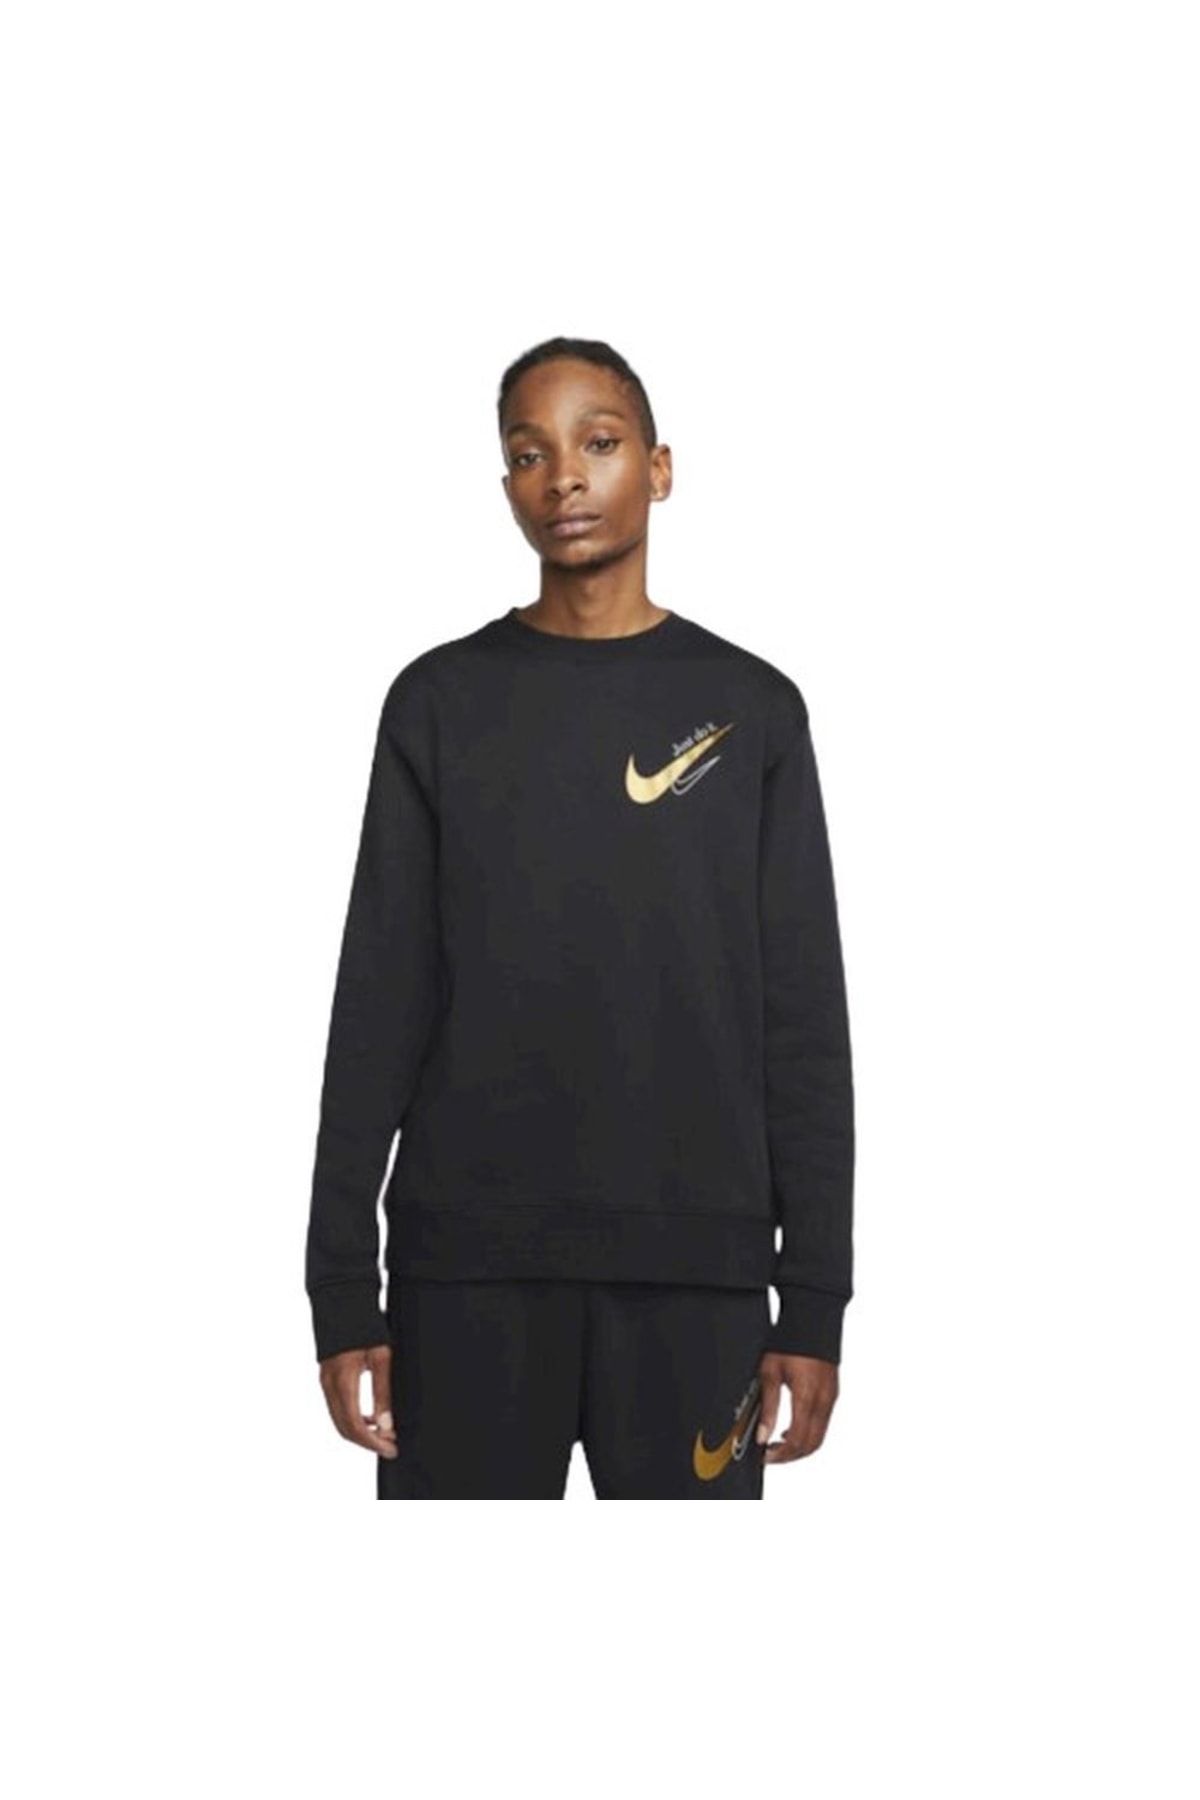 Nike Sportswear Men's Fleece Sweatshirt-dr9272-010